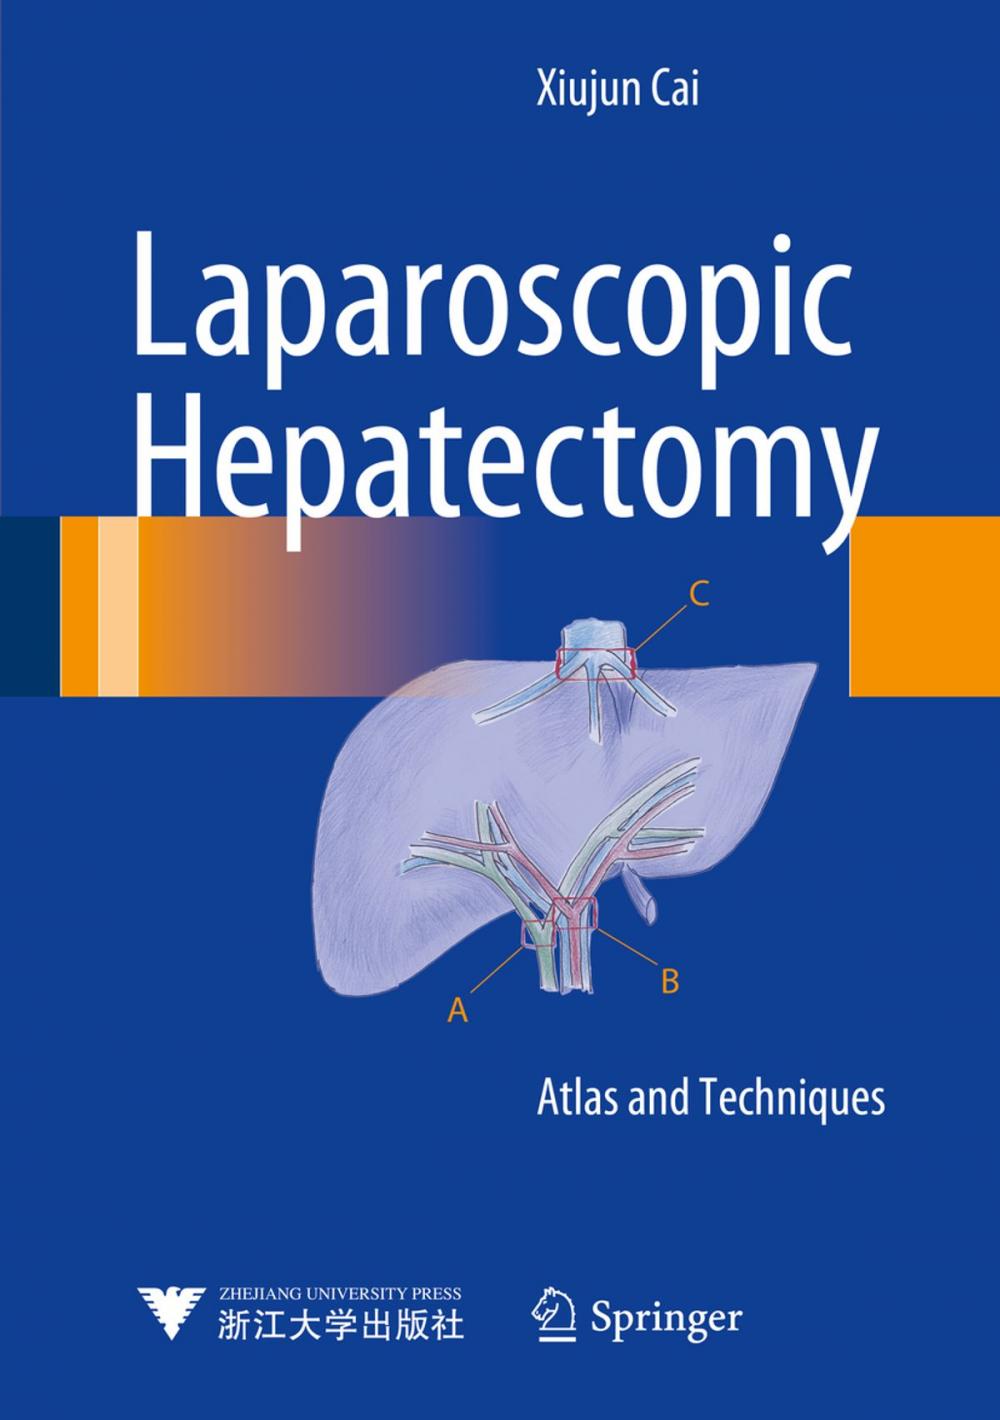 Big bigCover of Laparoscopic Hepatectomy